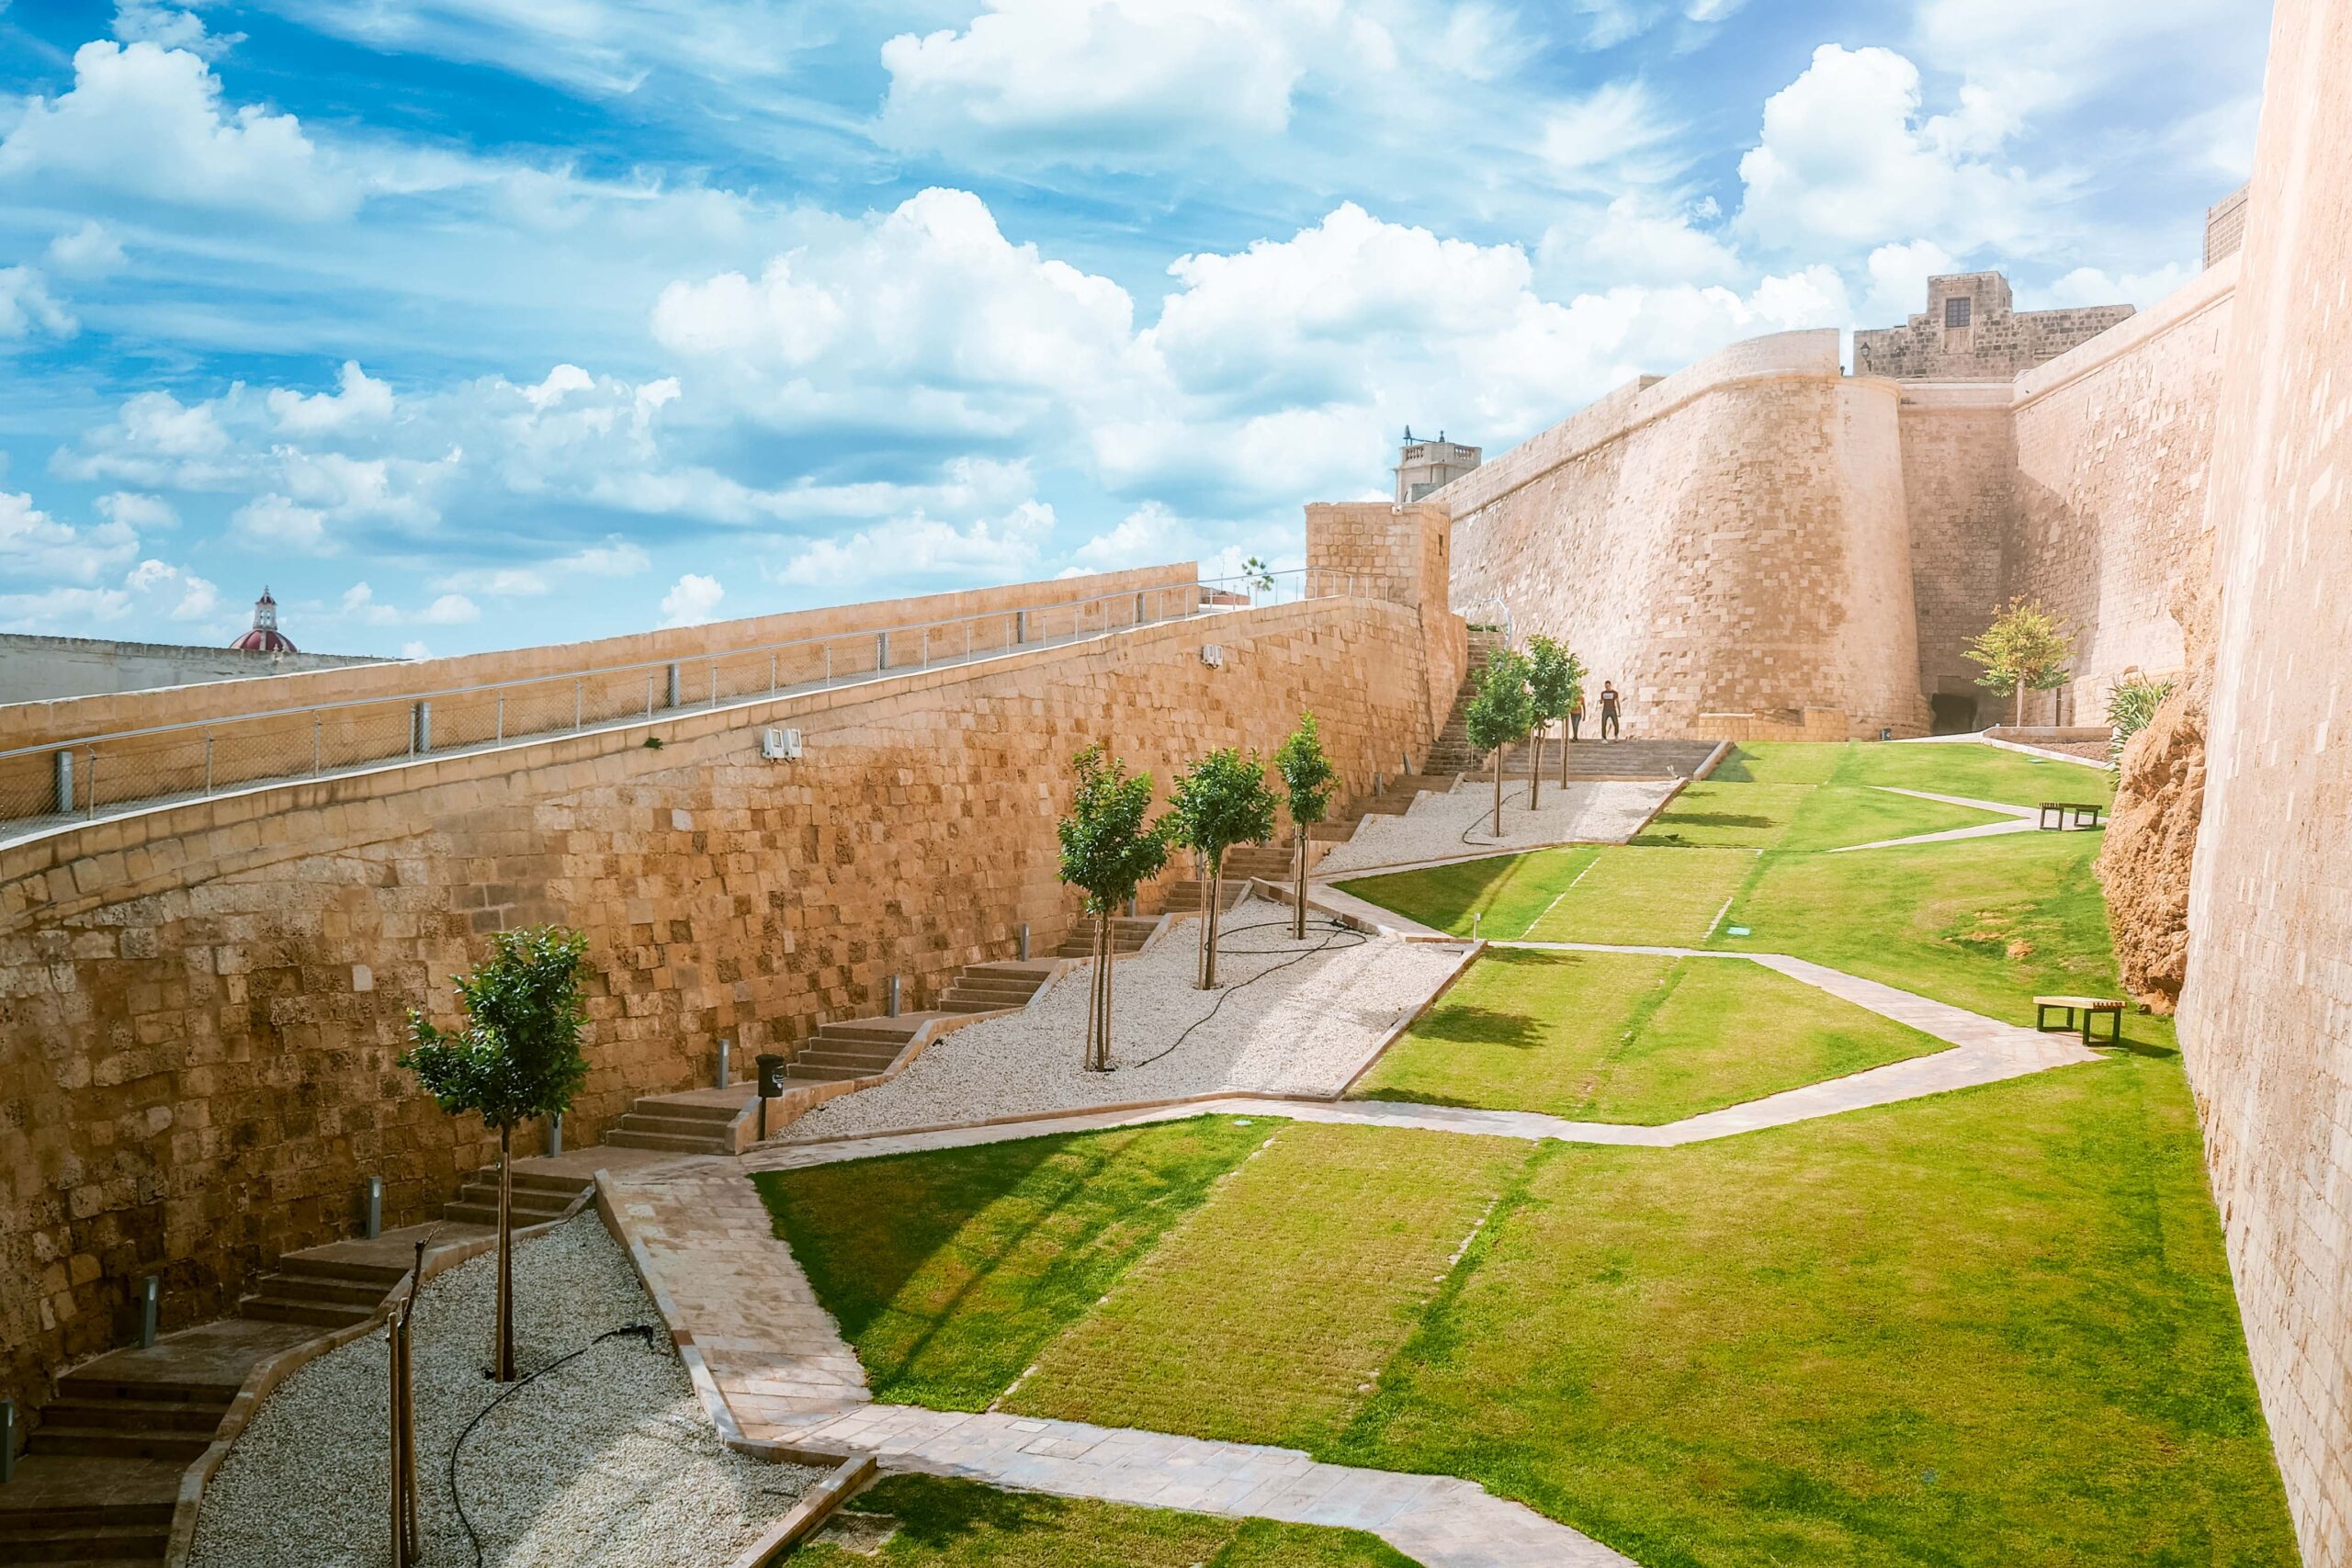 Gardens and walls of the Ciutadella in Victoria (Ir-Rabat) on Gozo island, Malta